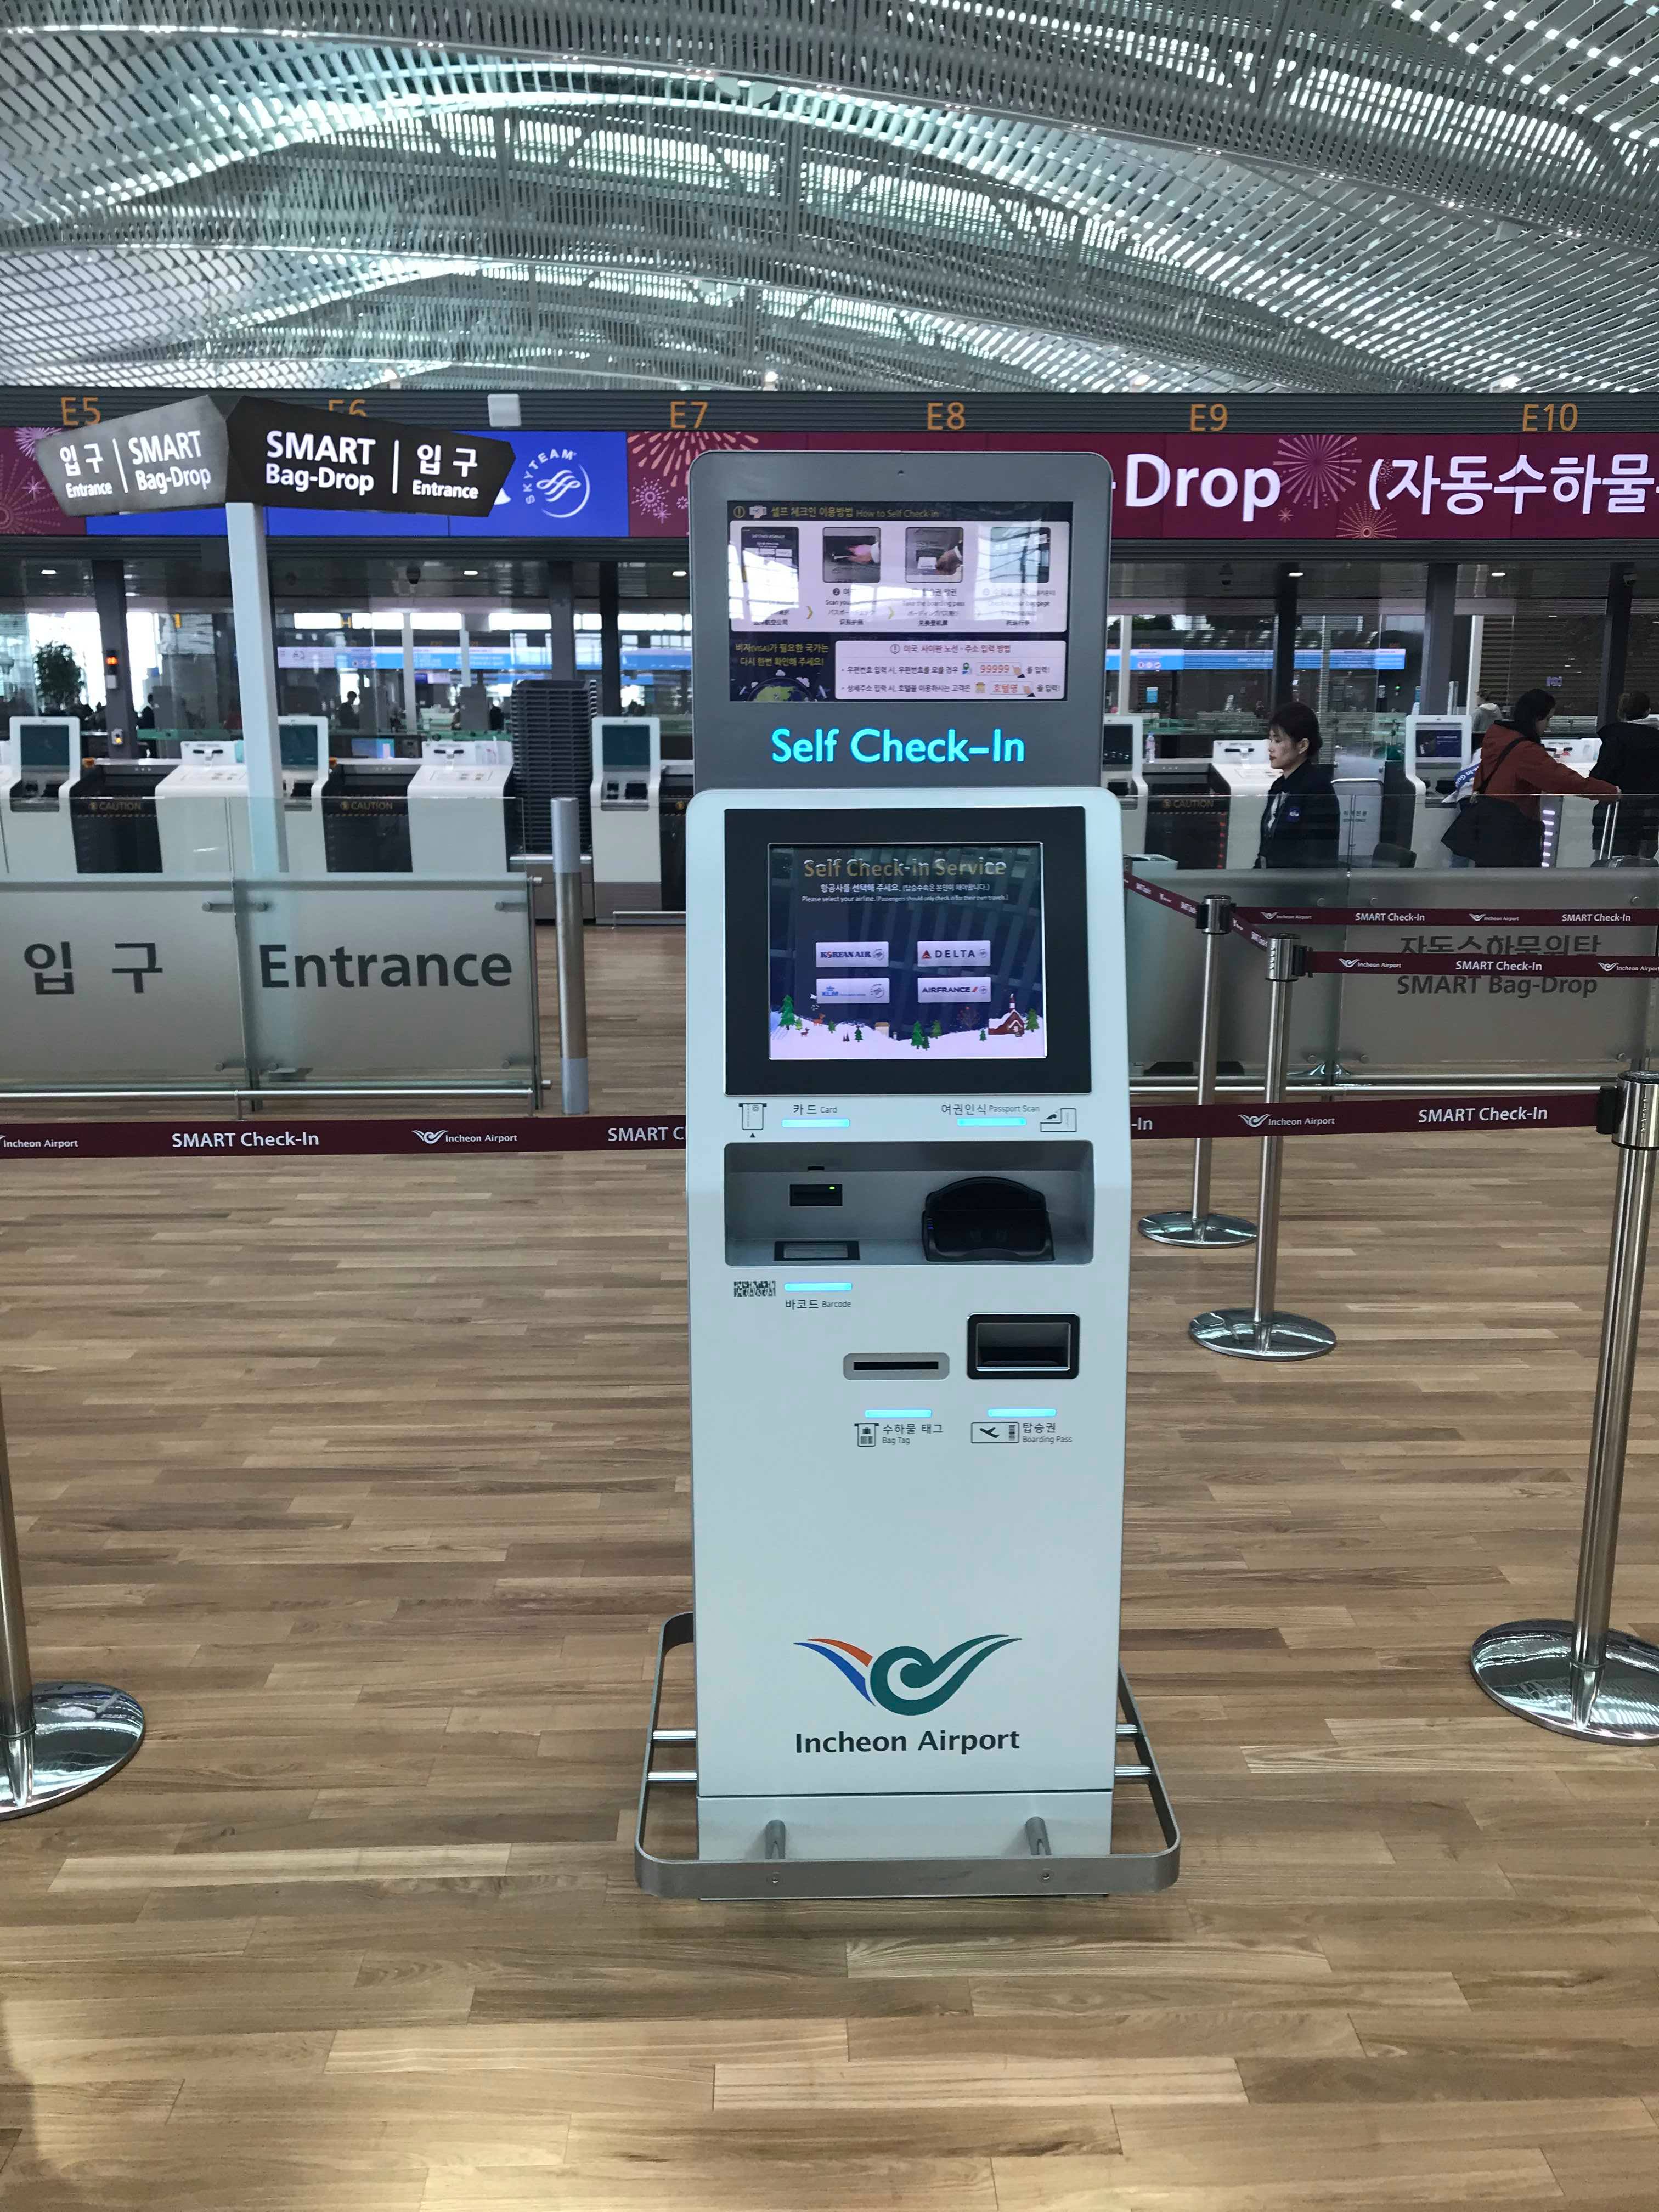 บรรยากาศสนามบินอินชอน เทอมินอล2 เกาหลีใต้